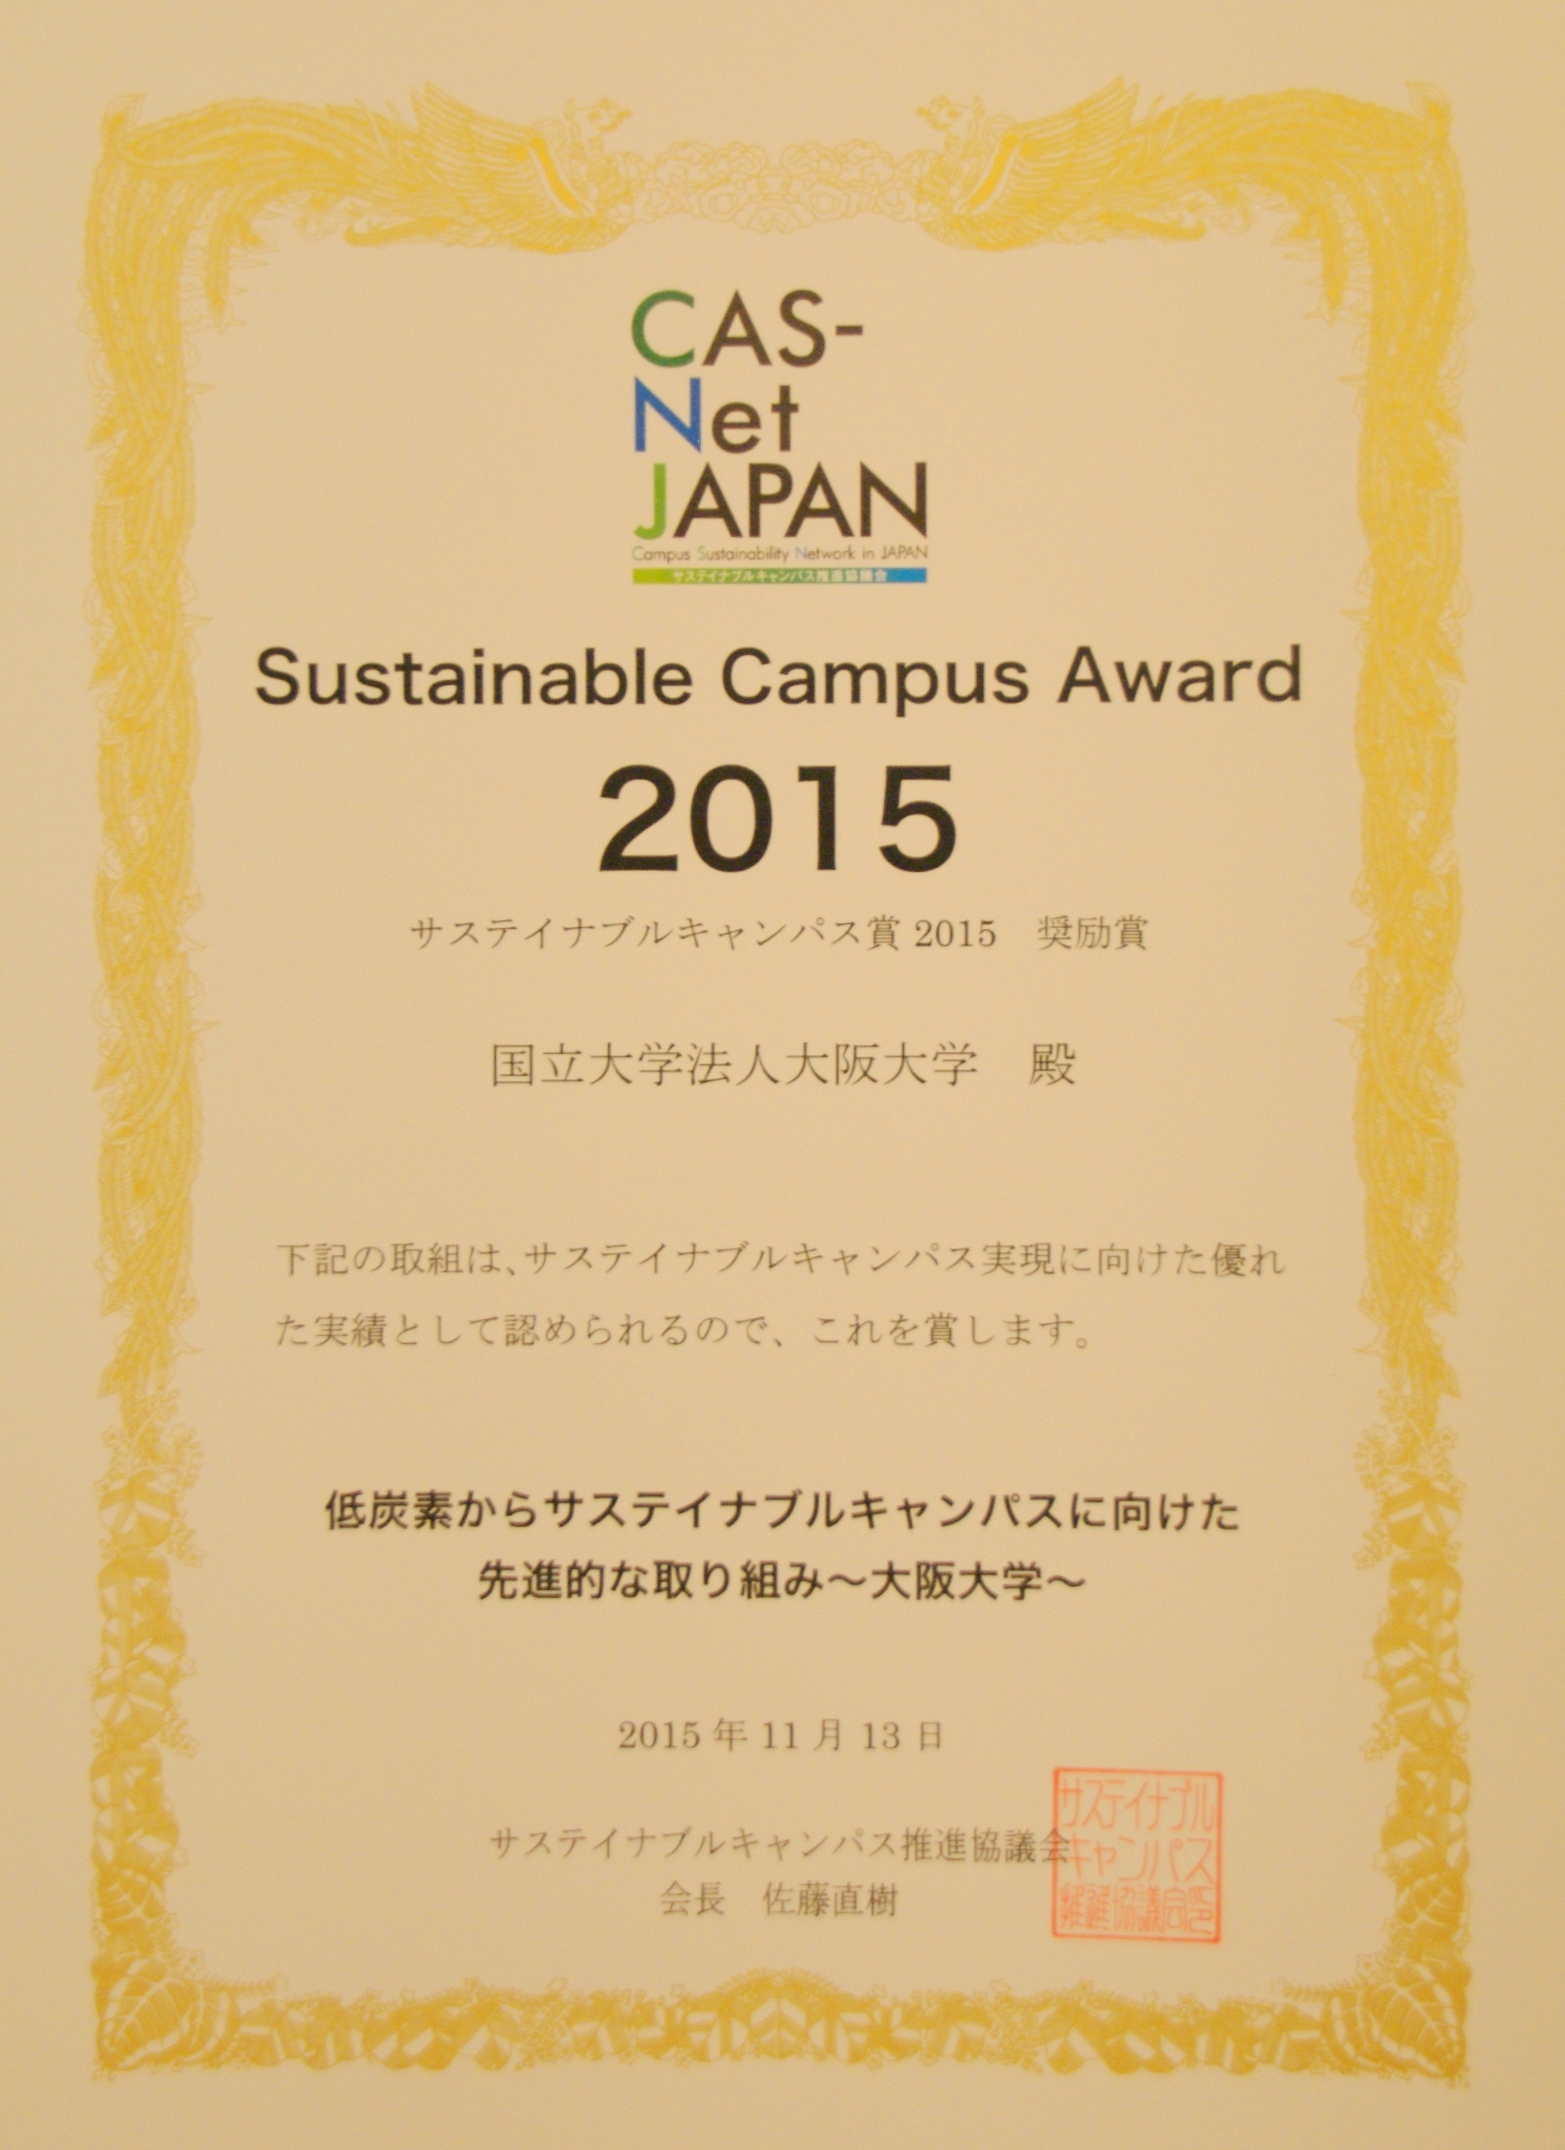 大阪大学が「第1回サステイナブルキャンパス賞 奨励賞」を受賞